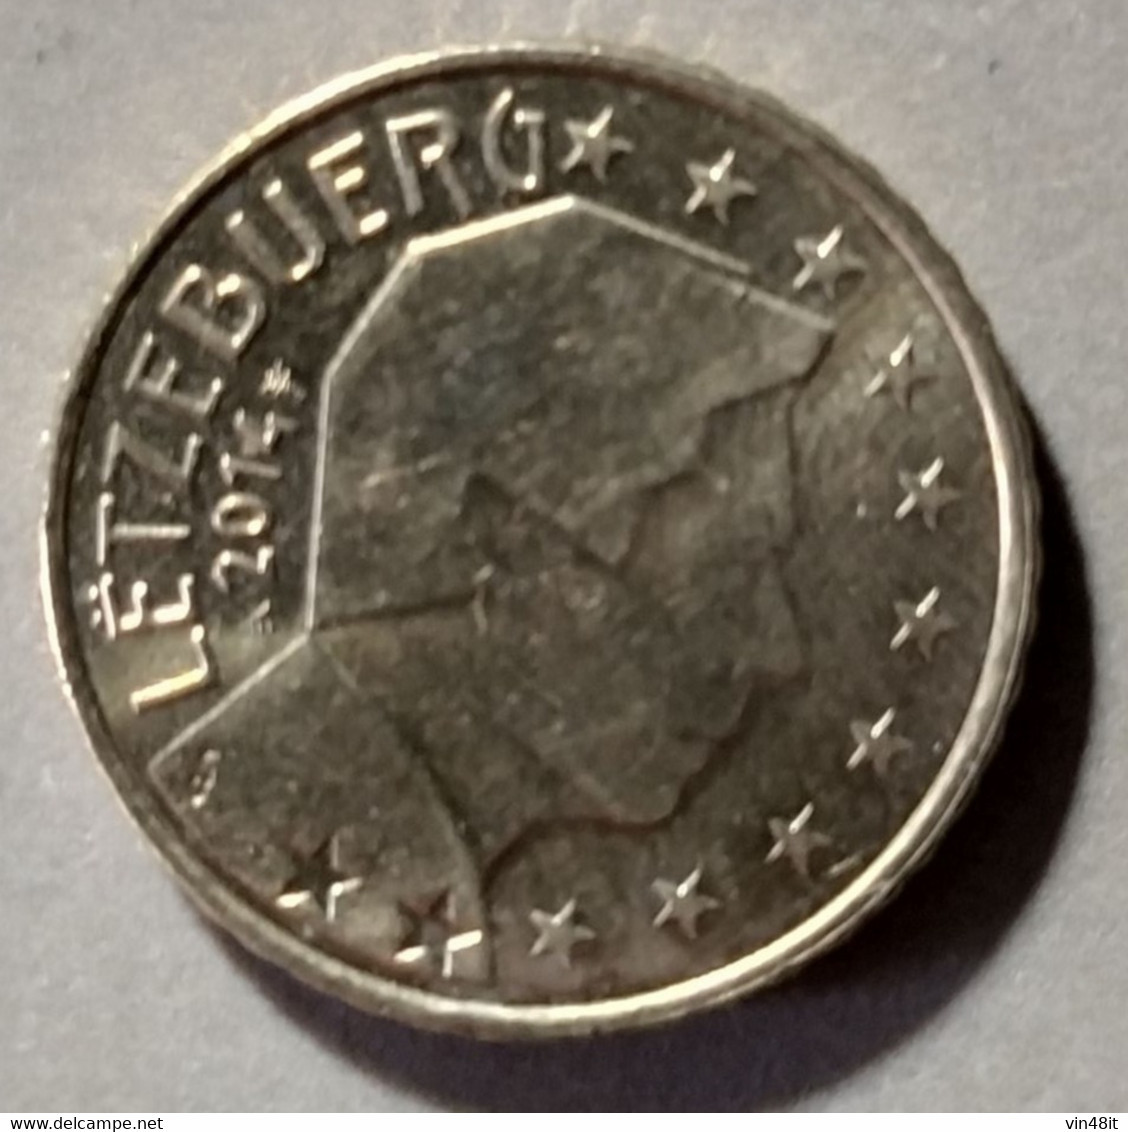 2014 -  LUSSEMBURGO  - MONETA IN EURO - DEL VALORE DI 50  CENTESIMI - USATA - Luxemburg